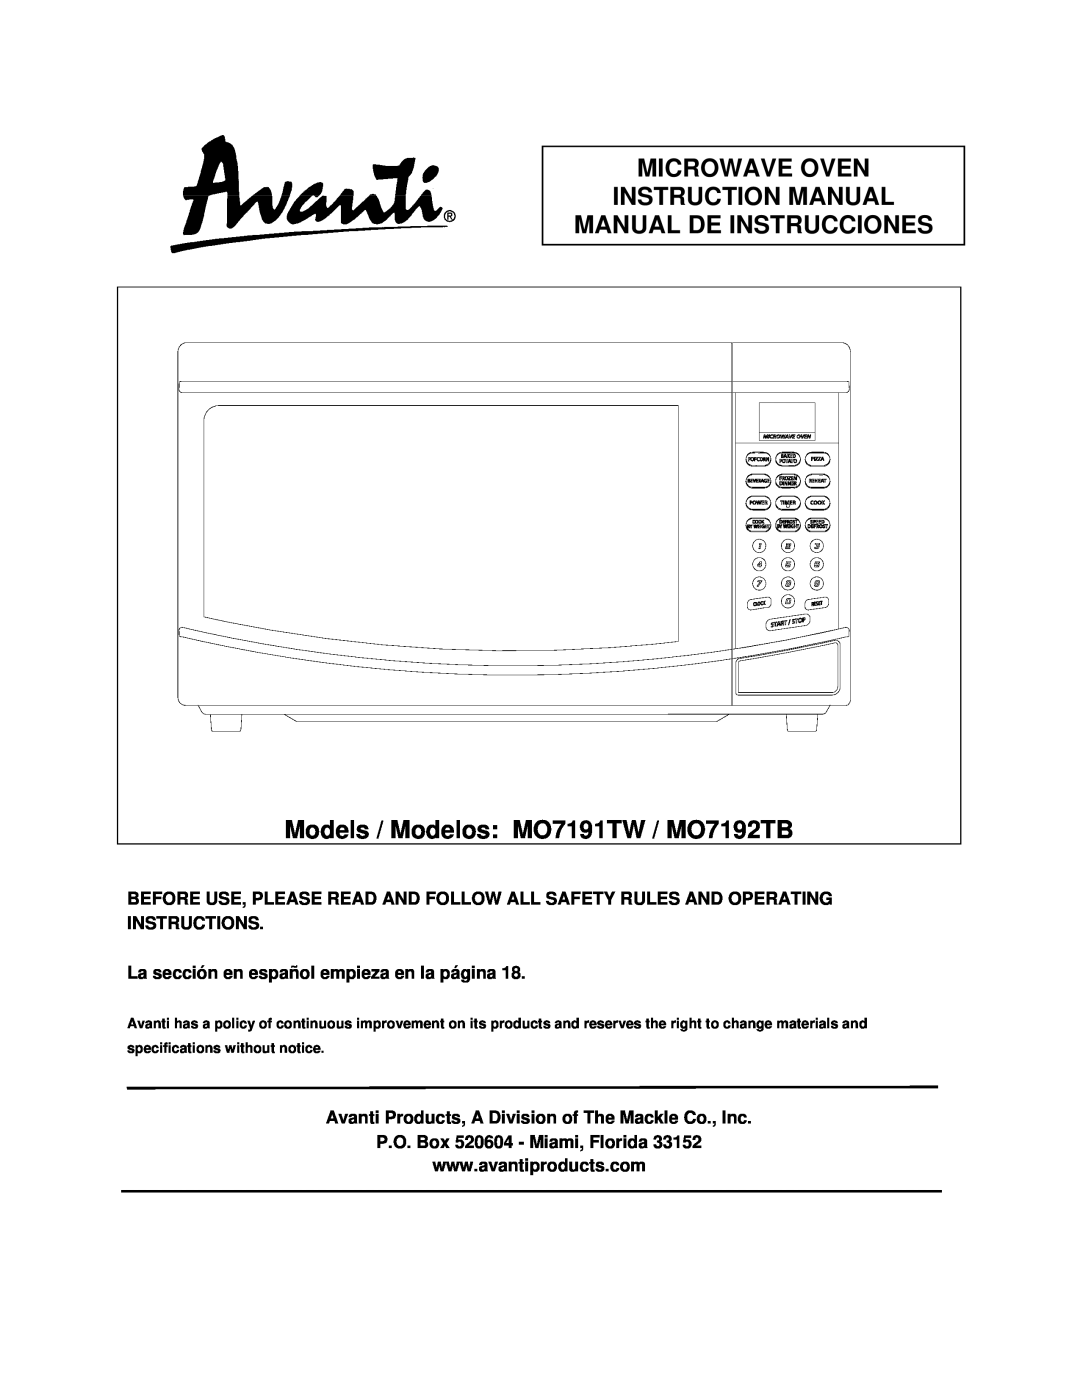 Avanti instruction manual Manual De Instrucciones, Models / Modelos MO7191TW / MO7192TB 